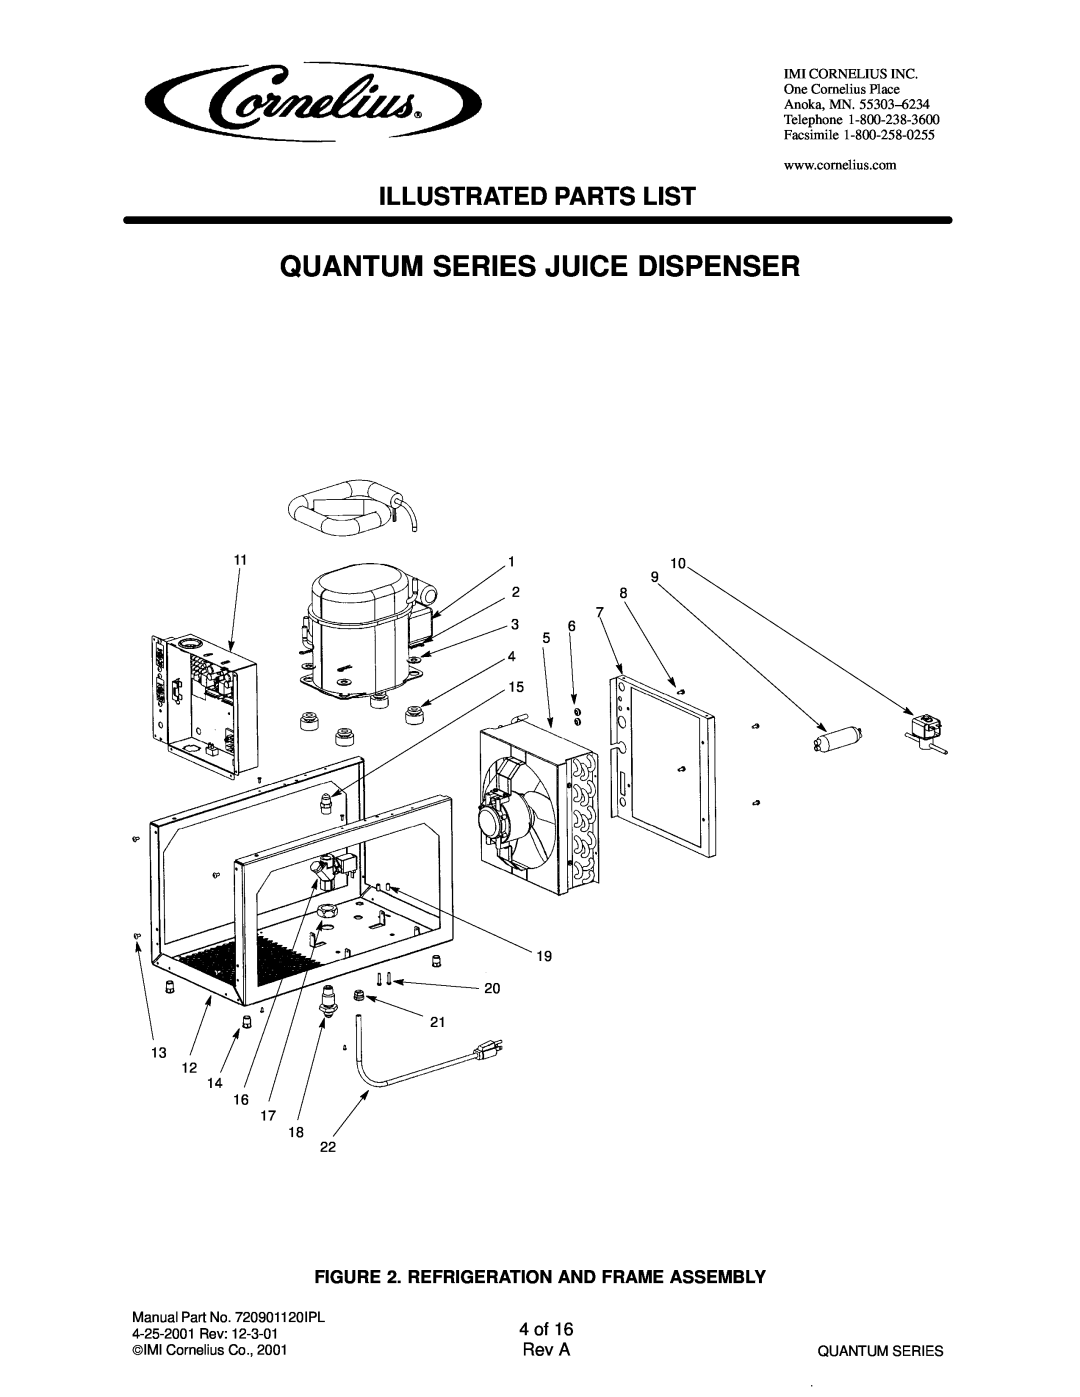 Cornelius QUANTUM SERIES Quantum Series Juice Dispenser, Illustrated Parts List, Refrigeration And Frame Assembly 